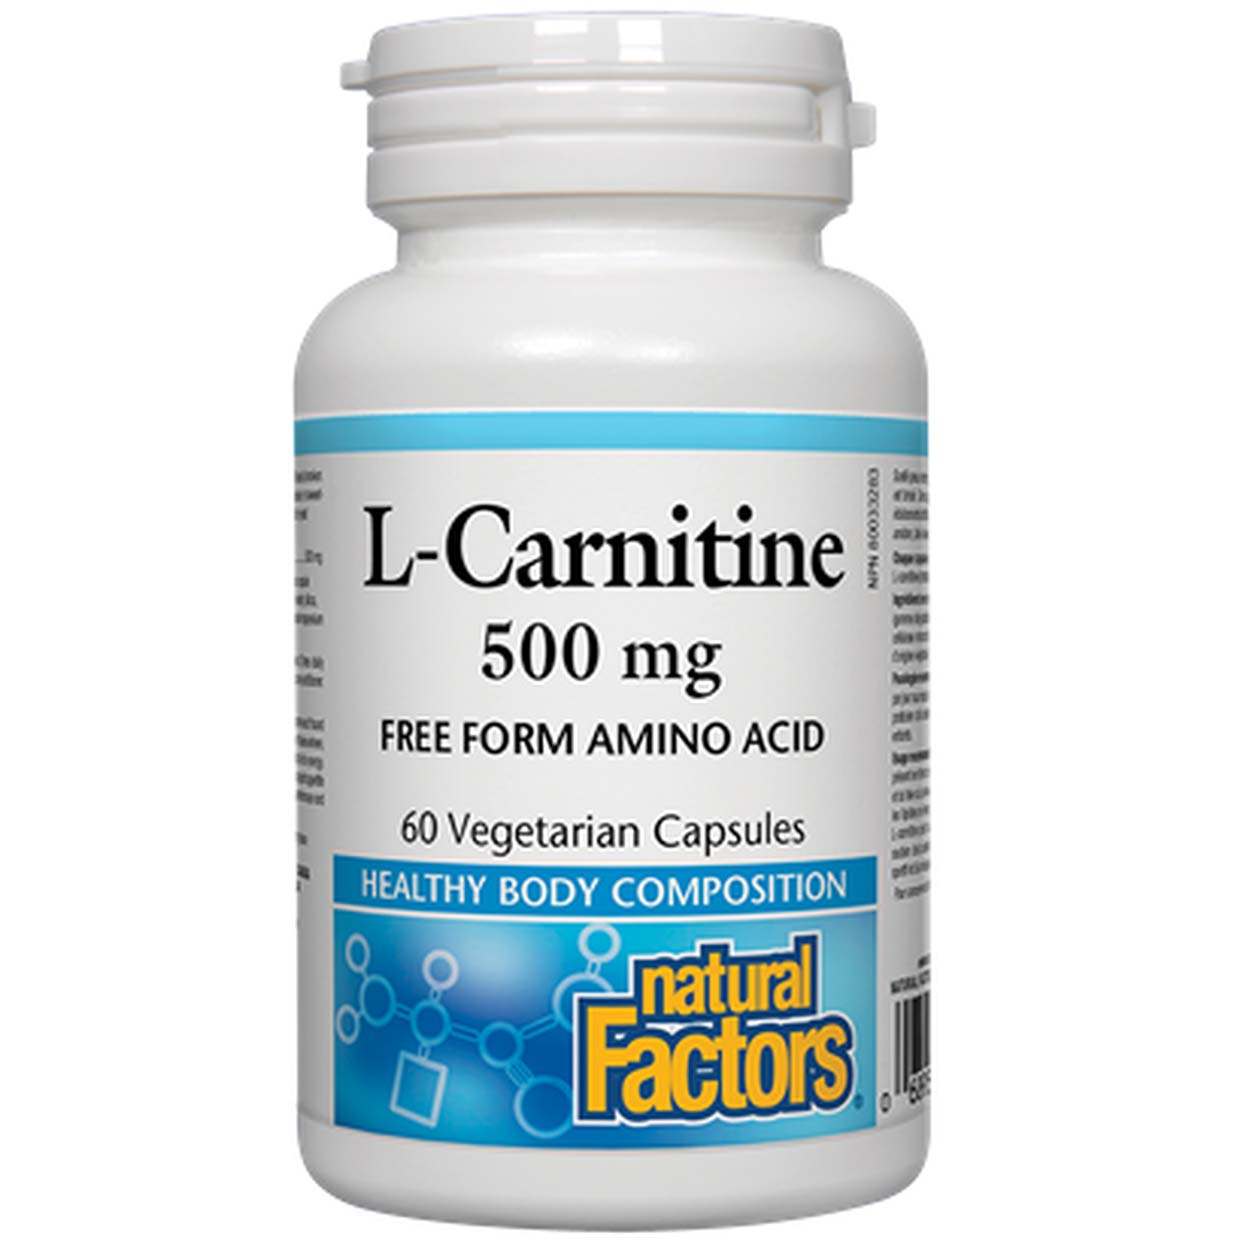 Natural Factors L-Carnitine 60 Veggie Capsules 500 mg